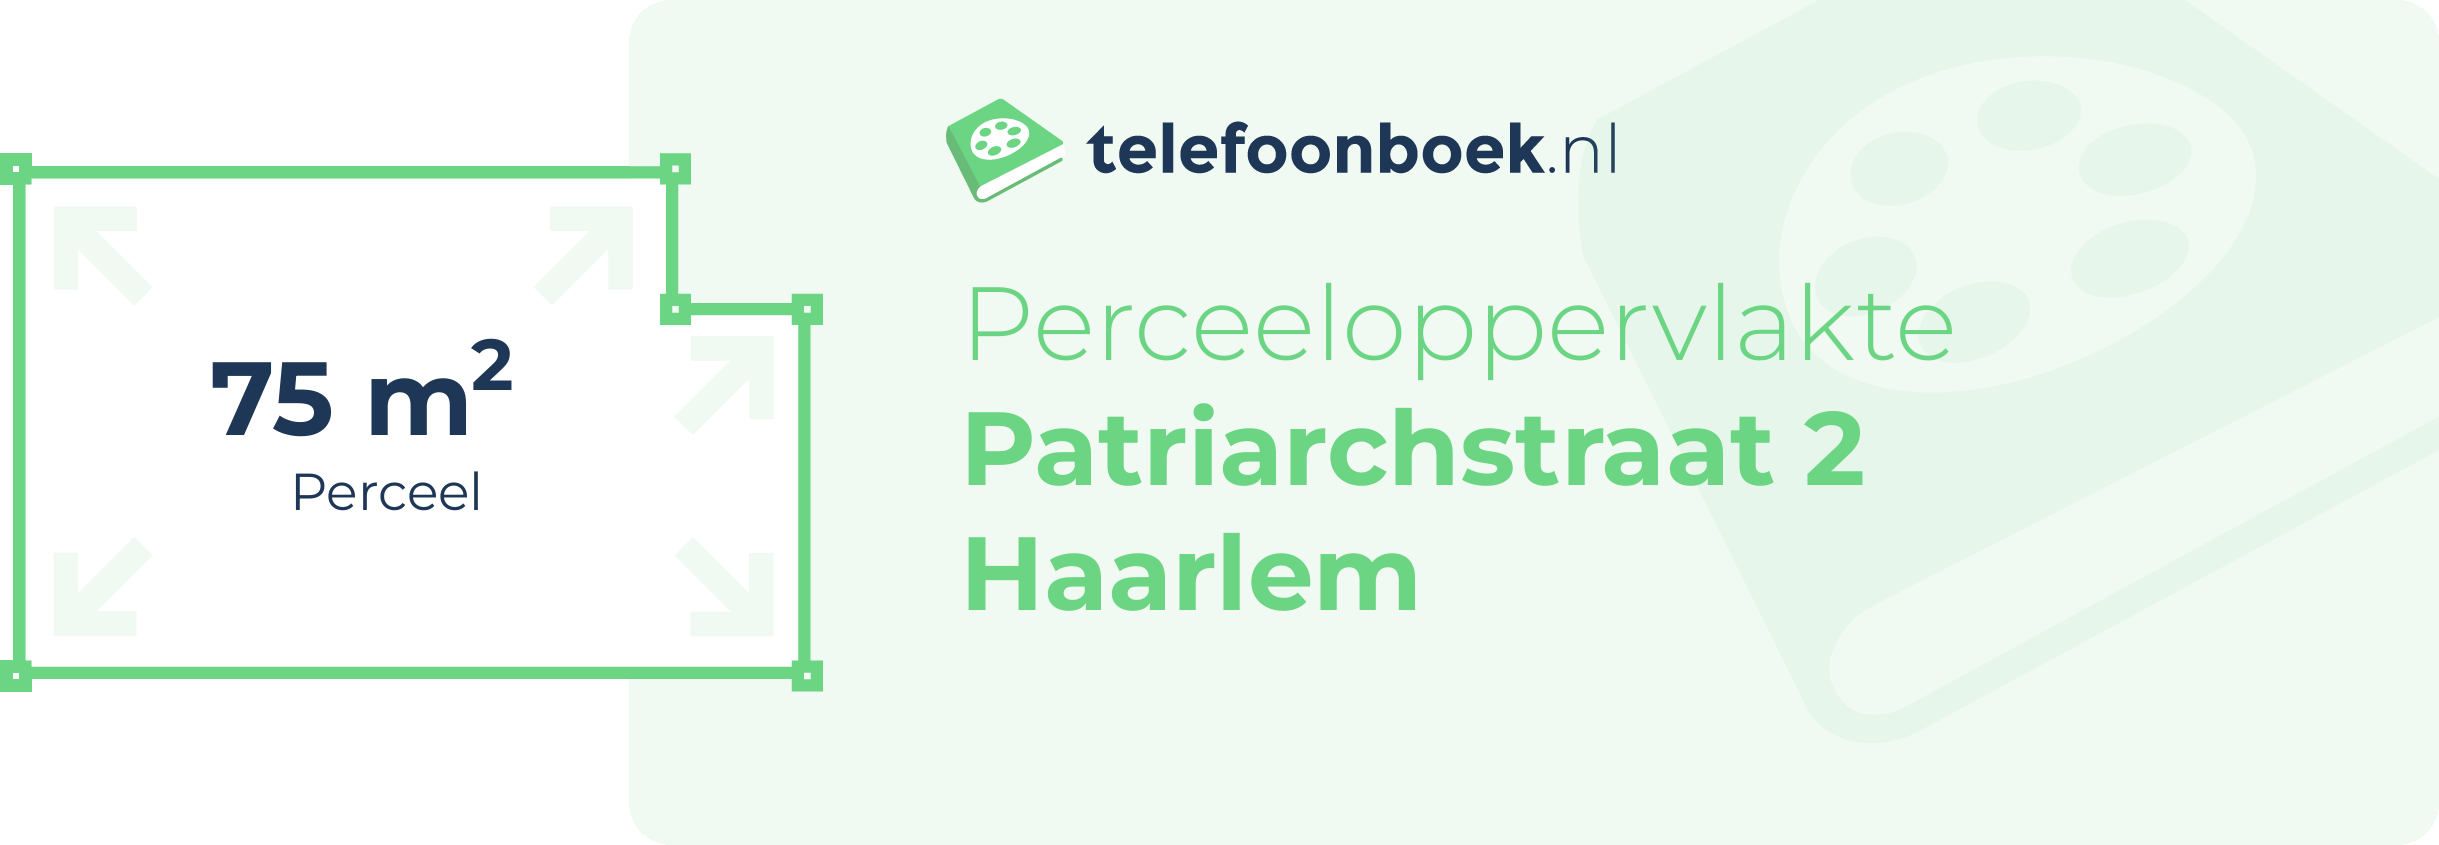 Perceeloppervlakte Patriarchstraat 2 Haarlem